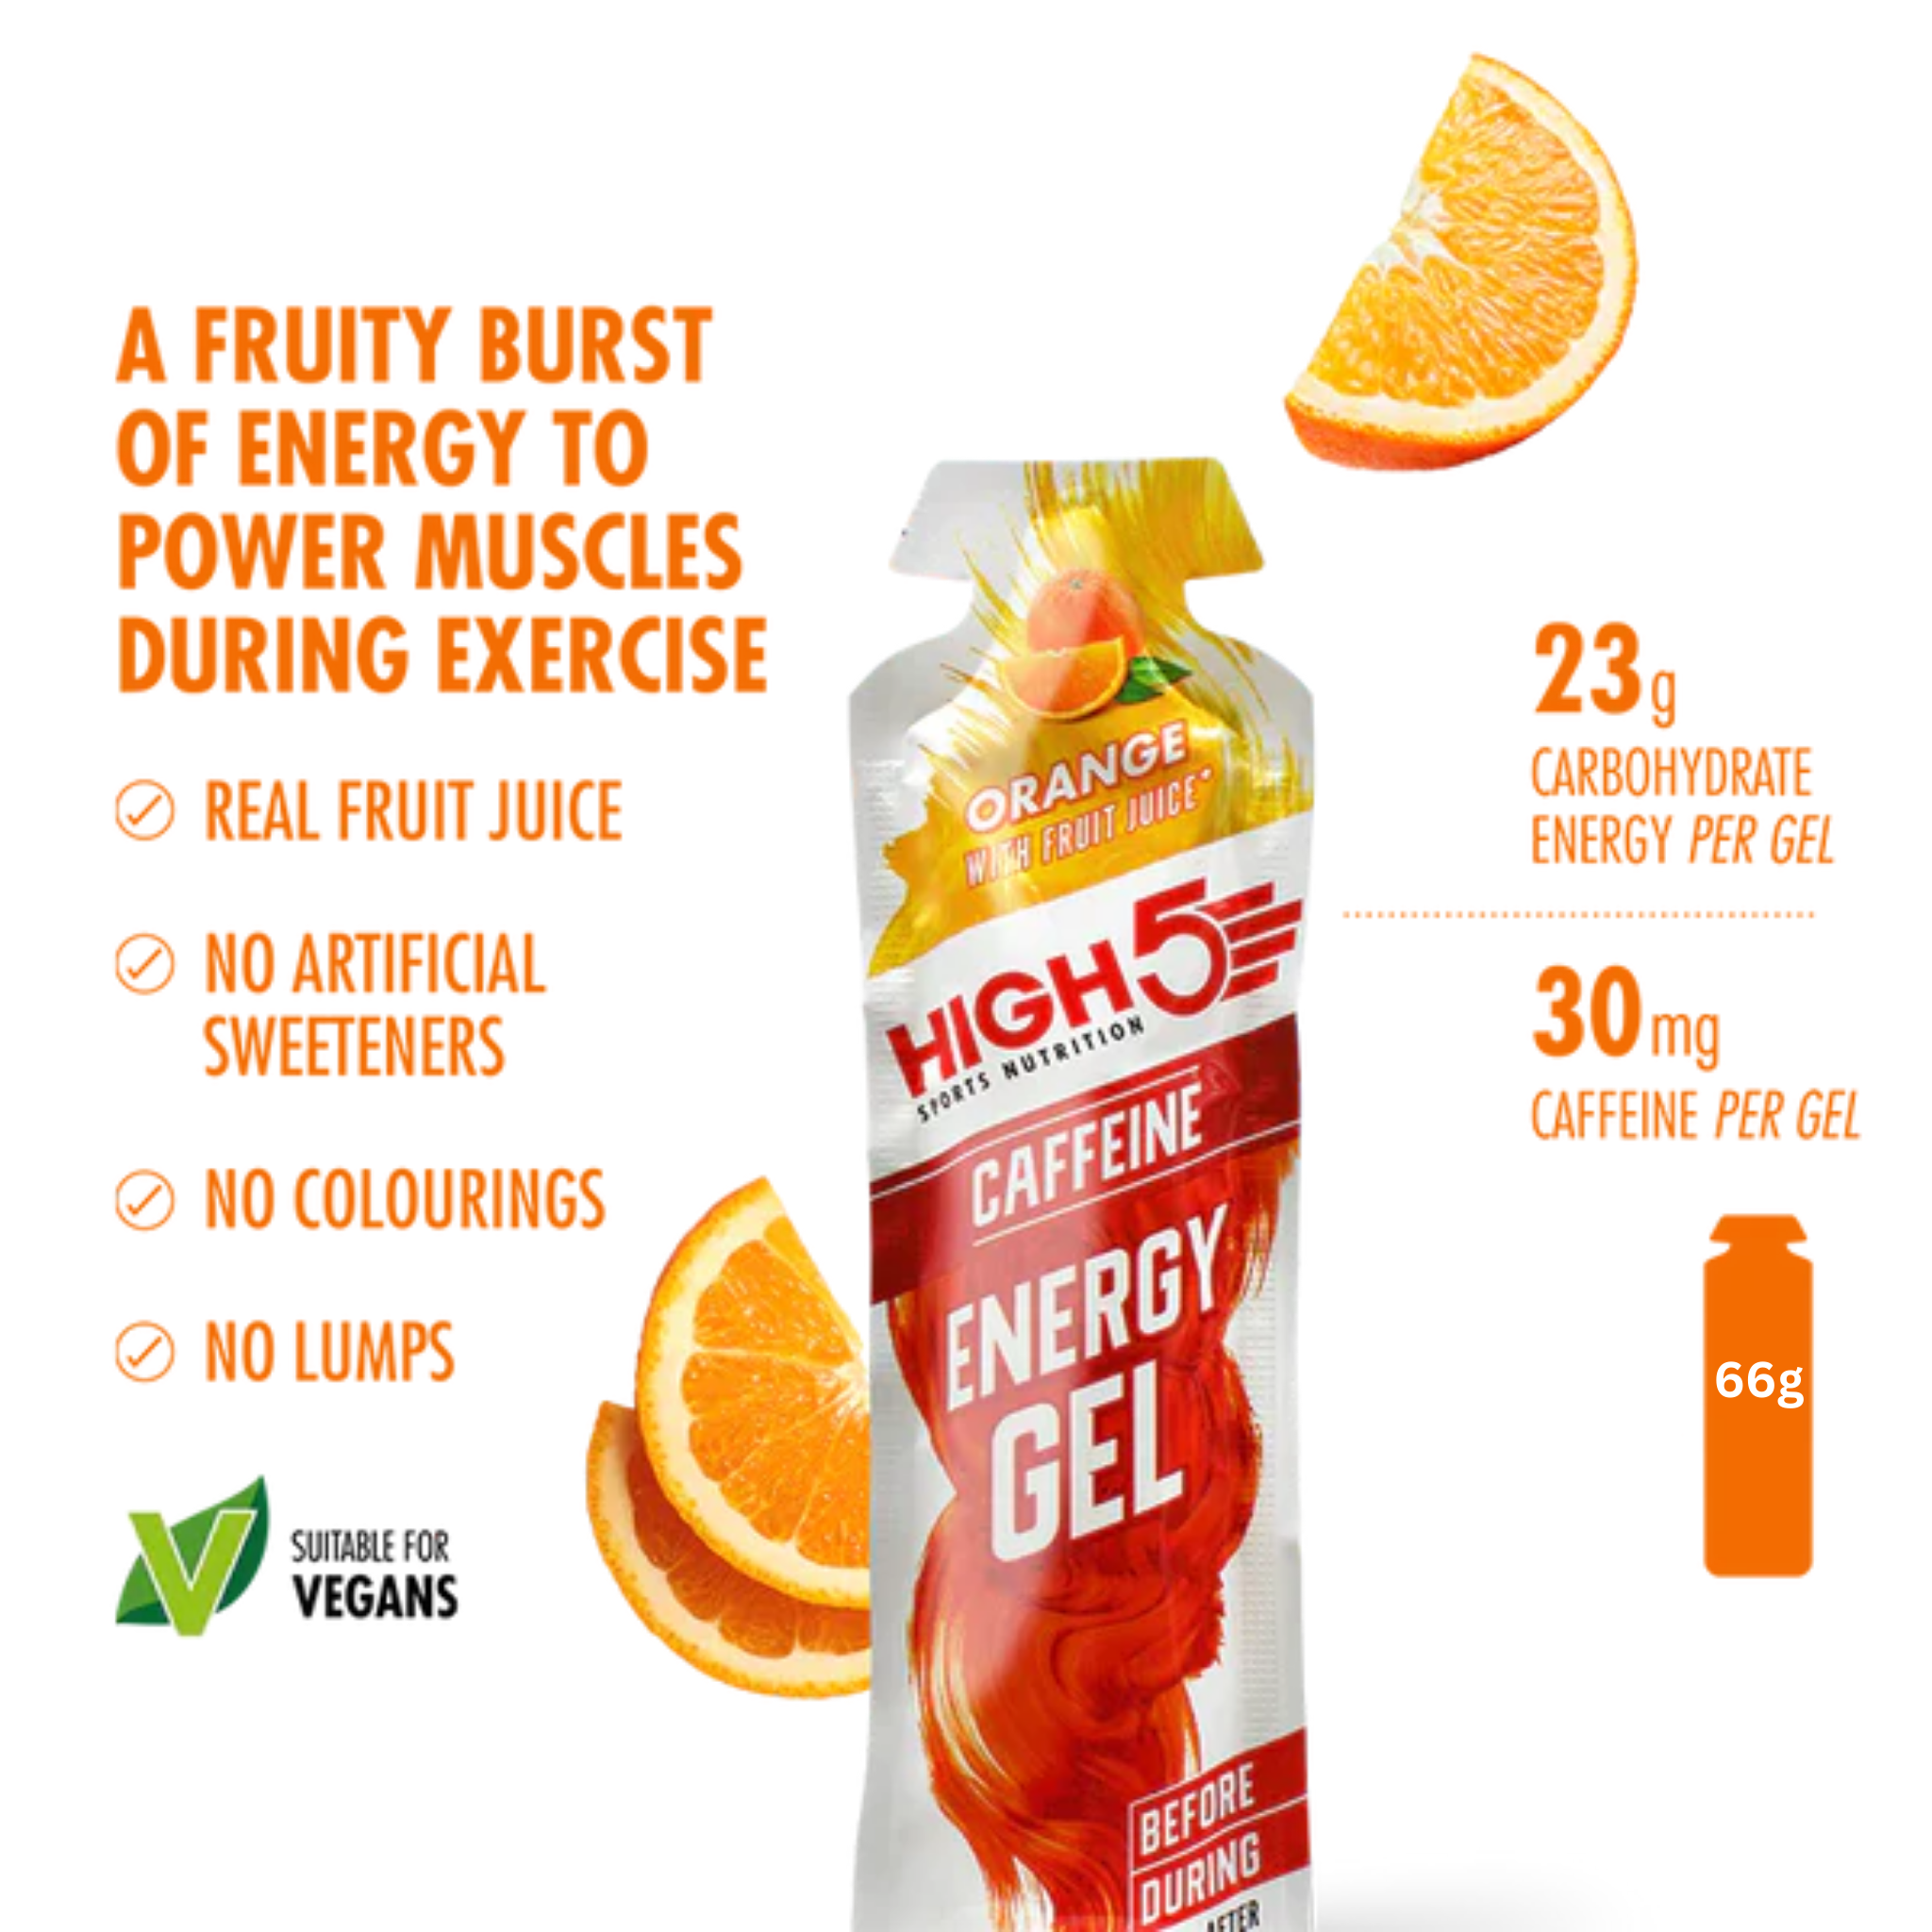 High5 Energigel Caffeine Orange 40 g x 20 stk.